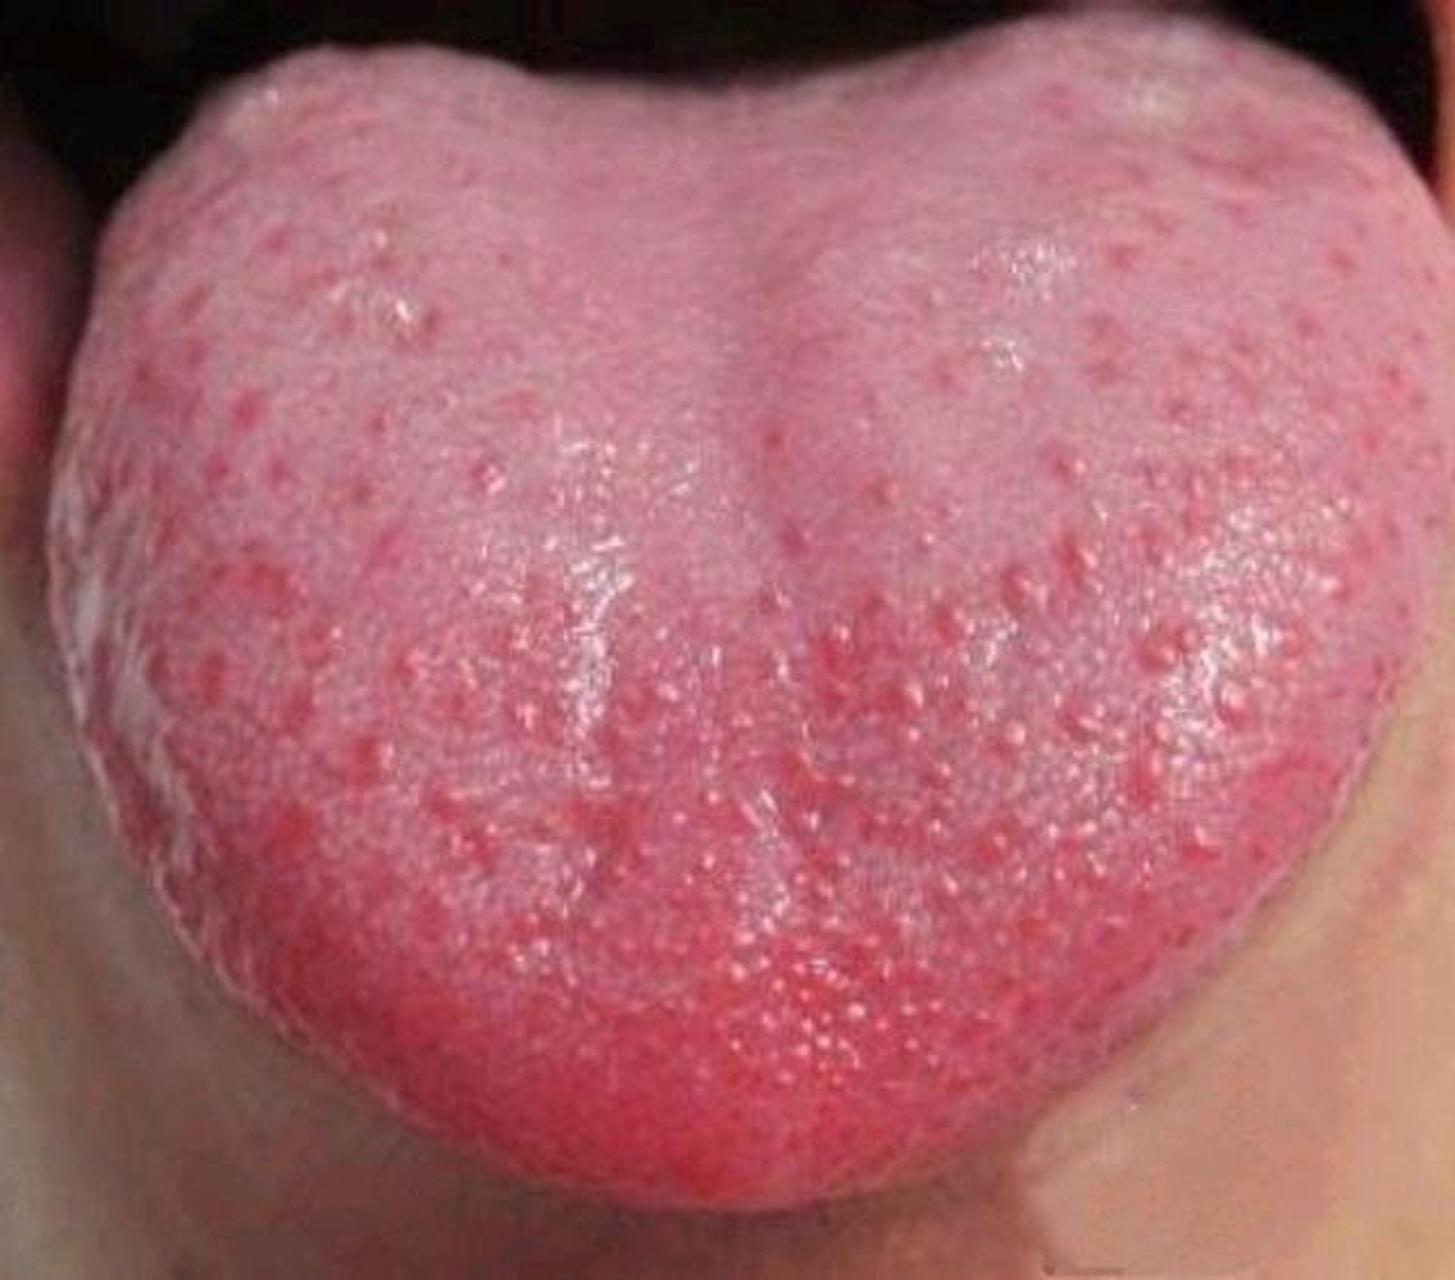 孩子的舌头发红,舌尖出现小红点,舌头看起来像是草莓